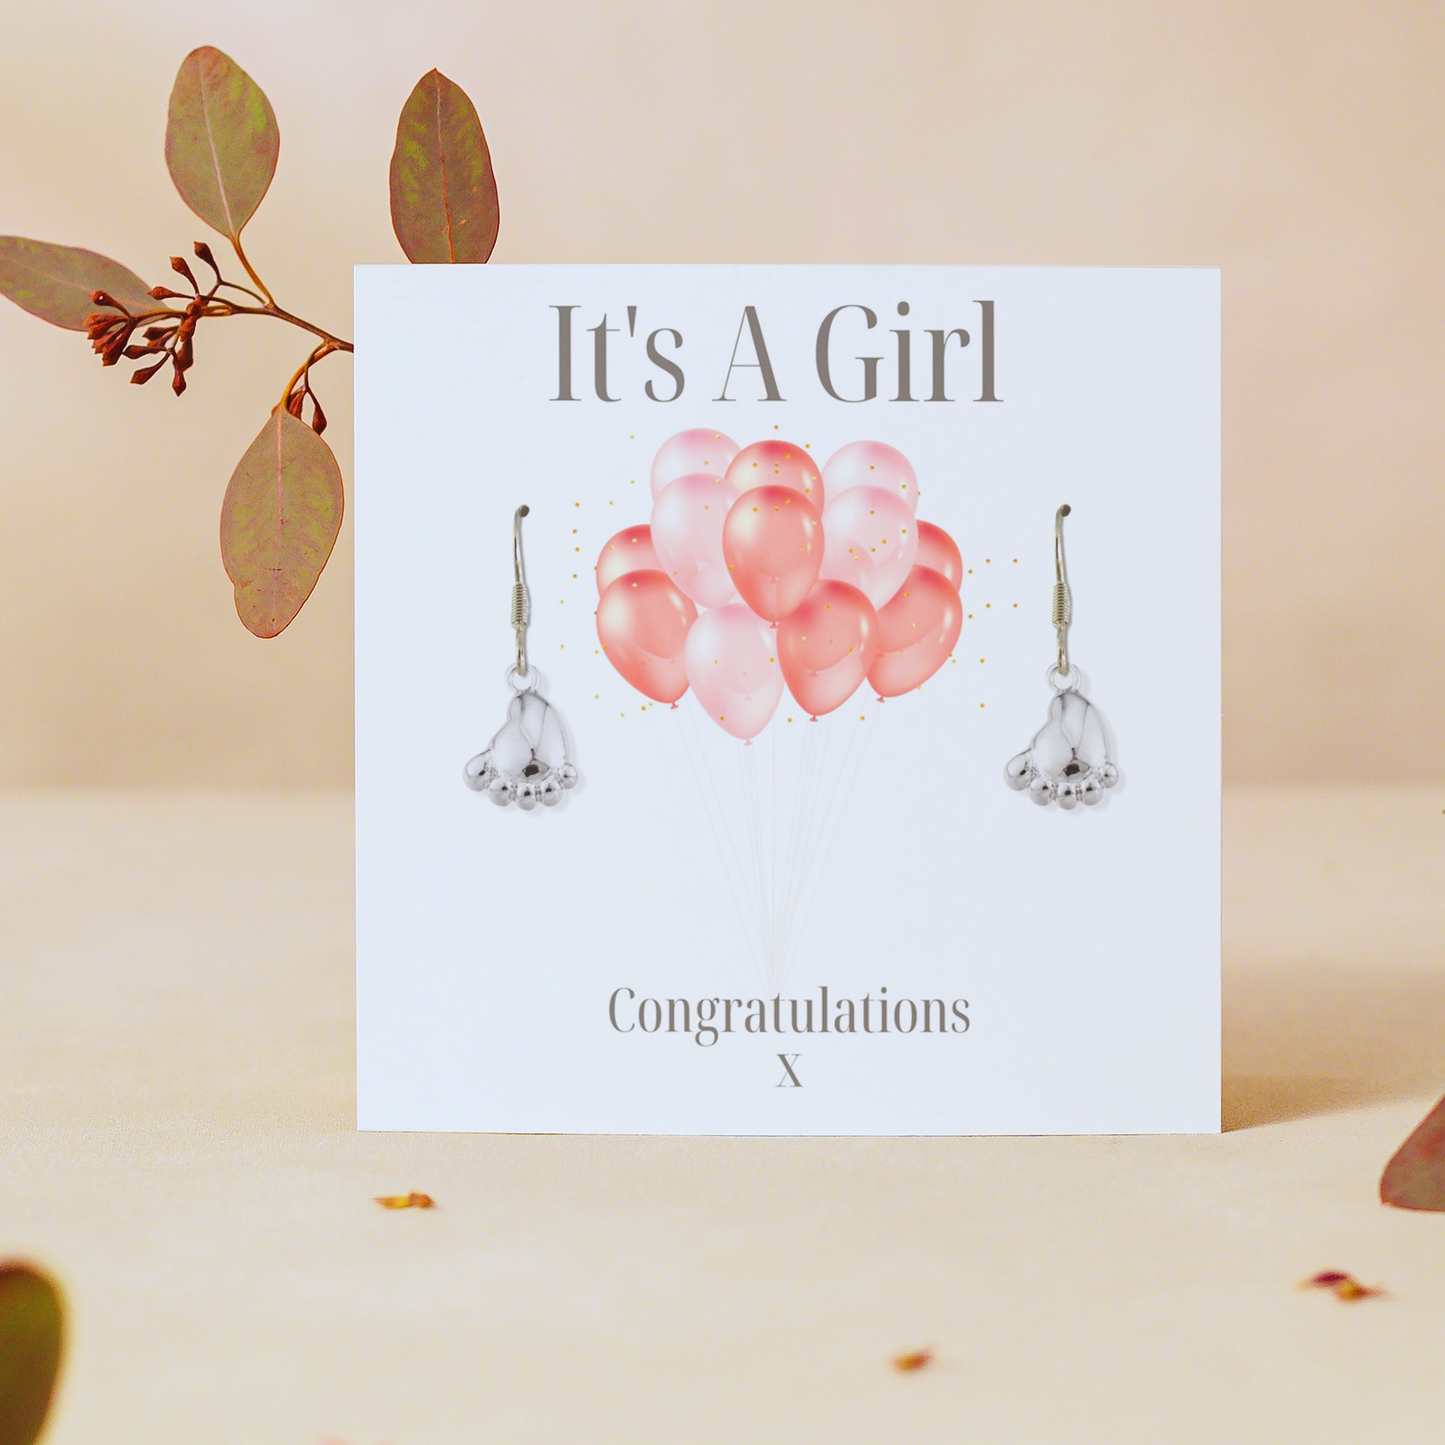 It's A Girl Earrings - Balloon Gift Card